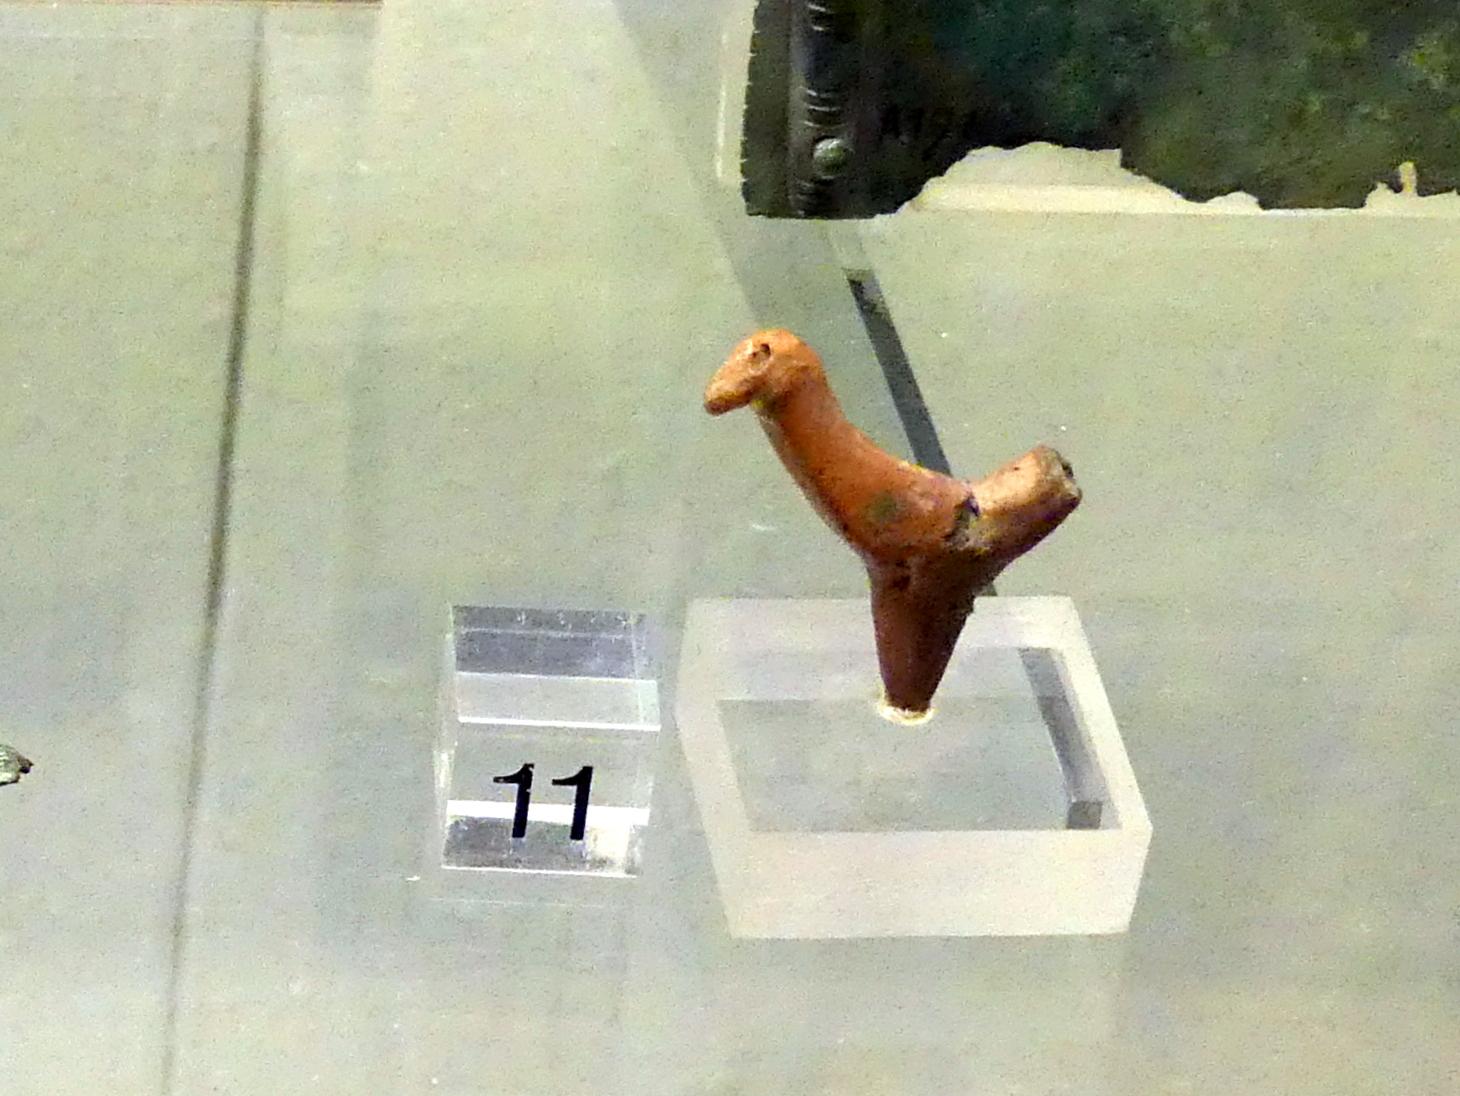 Tonfigur eines Vogels, Hallstattzeit, 700 - 200 v. Chr., Bild 1/2